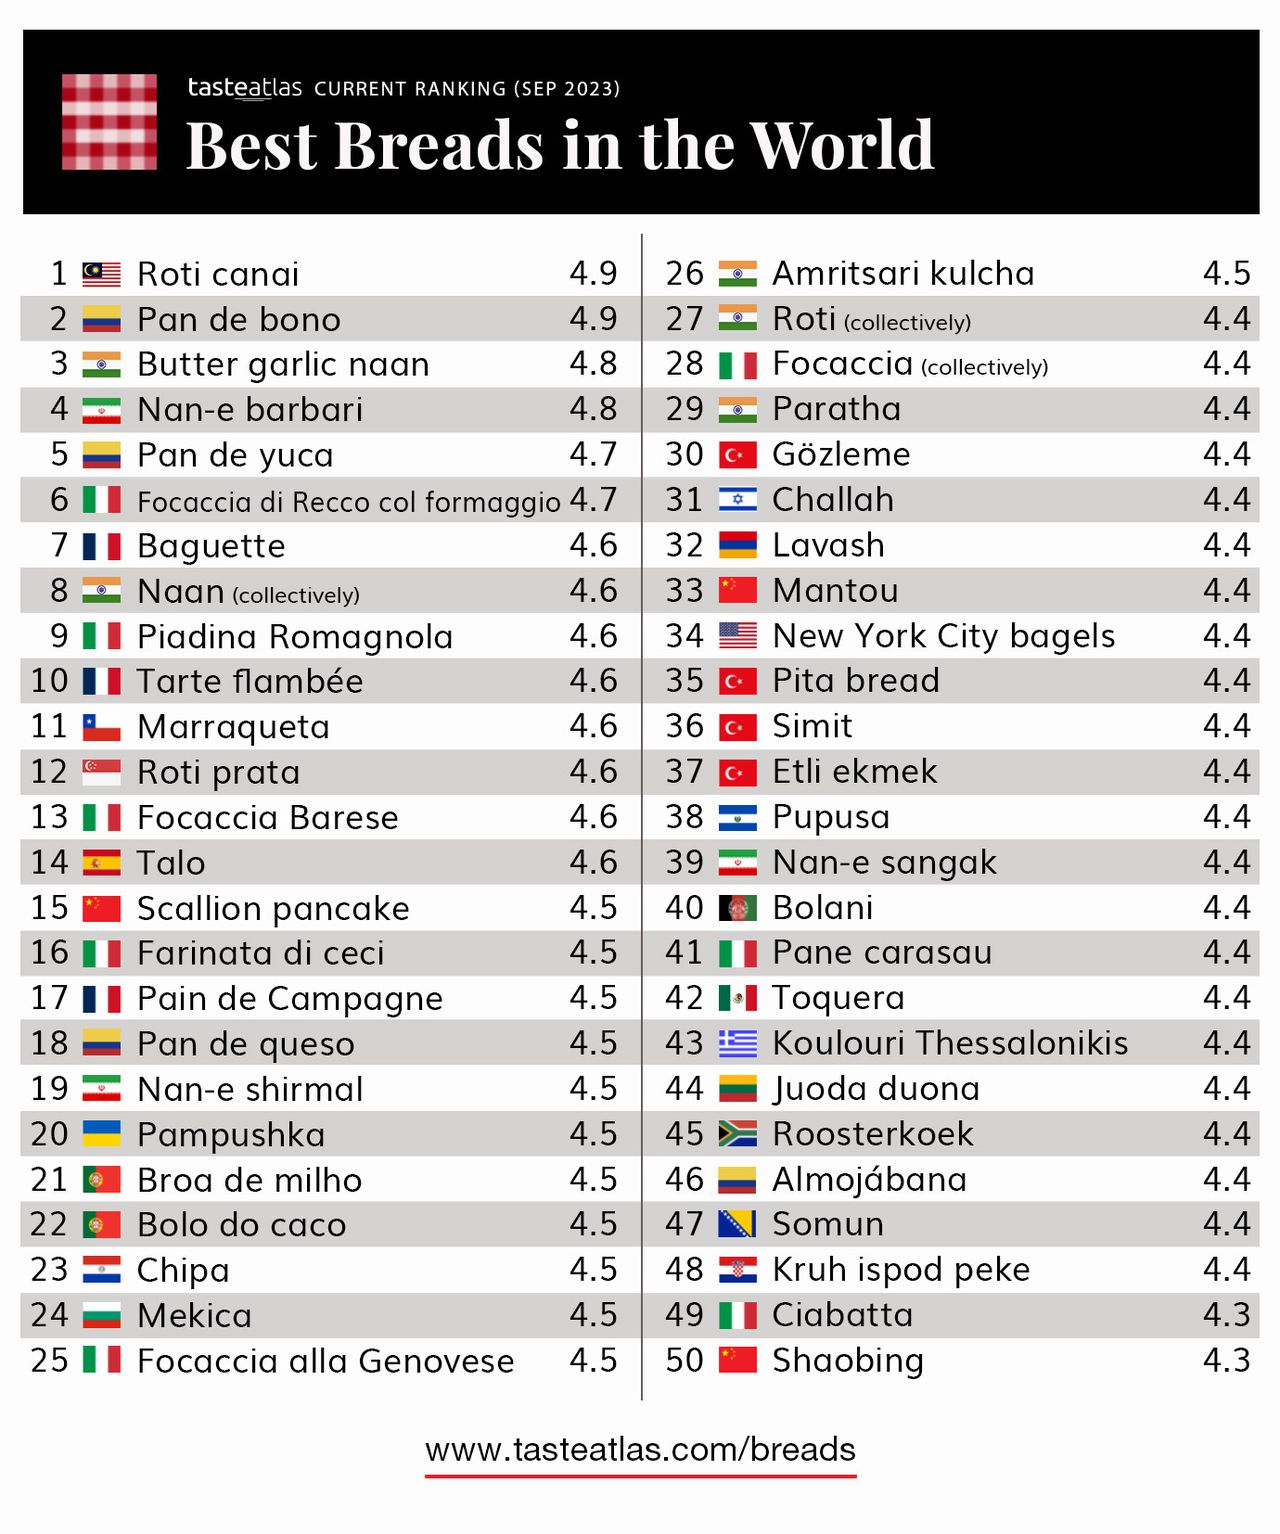 TasteAtlas reveló los mejores panes del mundo y el segundo lugar lo ocupa el pandebono.